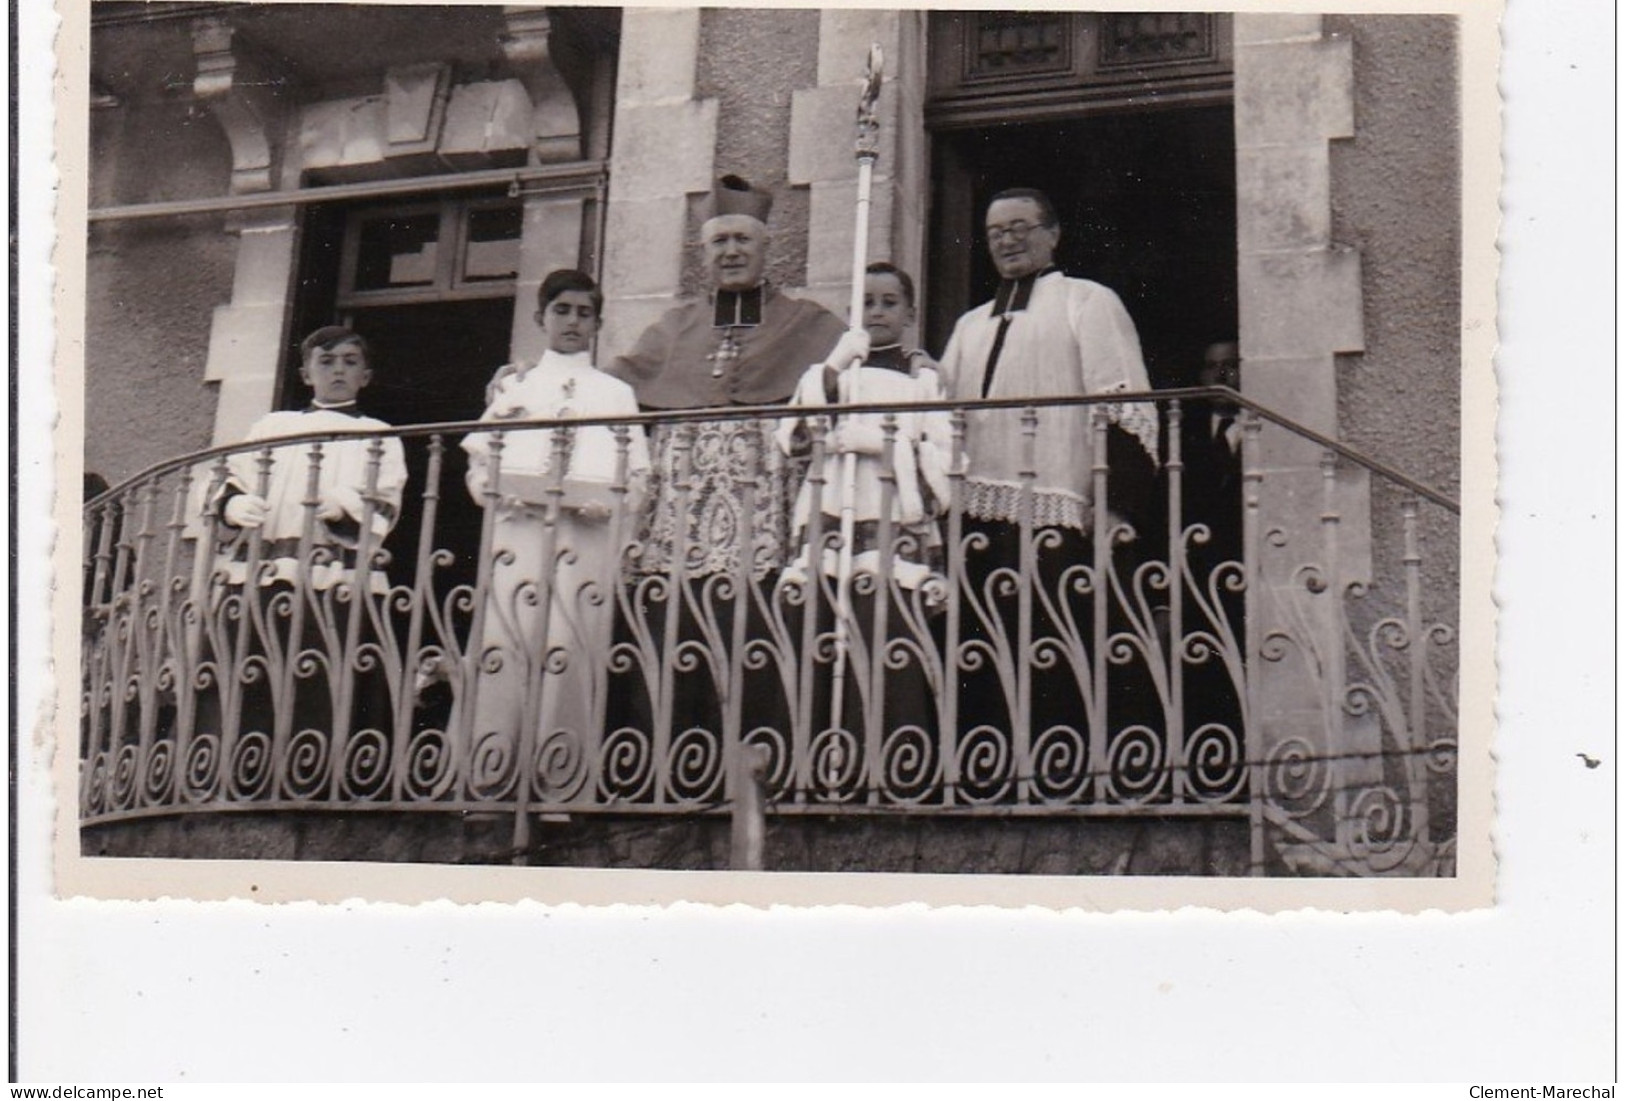 HENDAYE : bénédiction de l'église Ste anne par S.E.Mgr. Haubout eveque de bayonne 7 aout 1938 (13 CPA) - très bon état